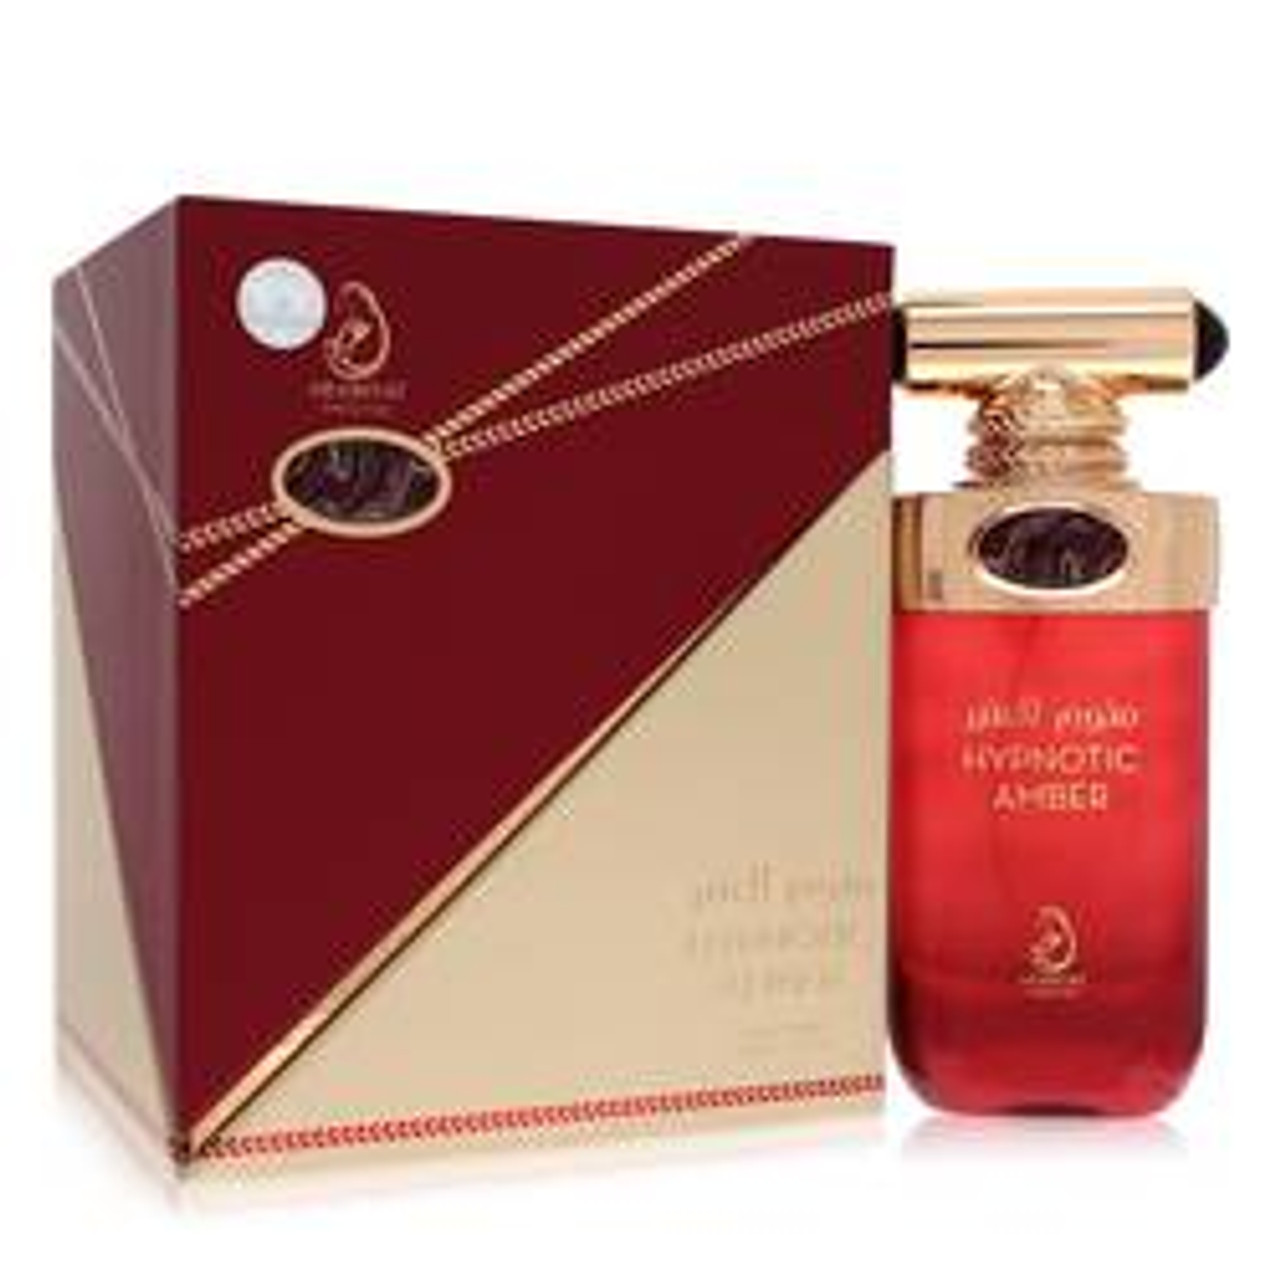 Arabiyat Hypnotic Amber Cologne By Arabiyat Prestige Eau De Parfum Spray 3.4 oz for Men - *Pre-Order